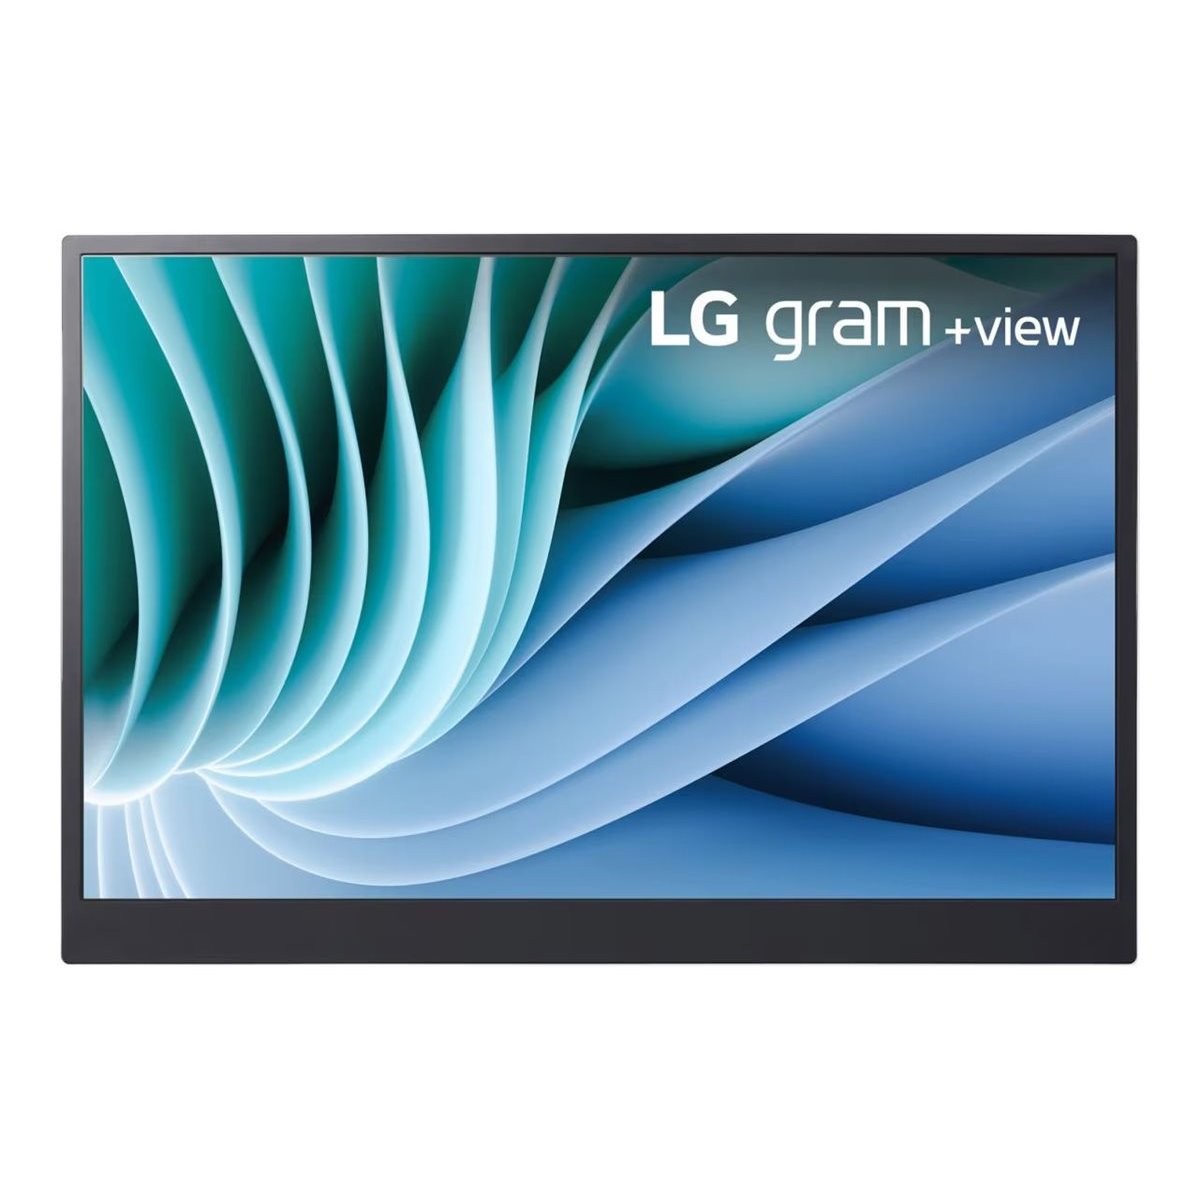 LG 16 16MR70.ASDWU+view LG Gram USB-C 16:10 2560x1600 - Flat Screen - 16